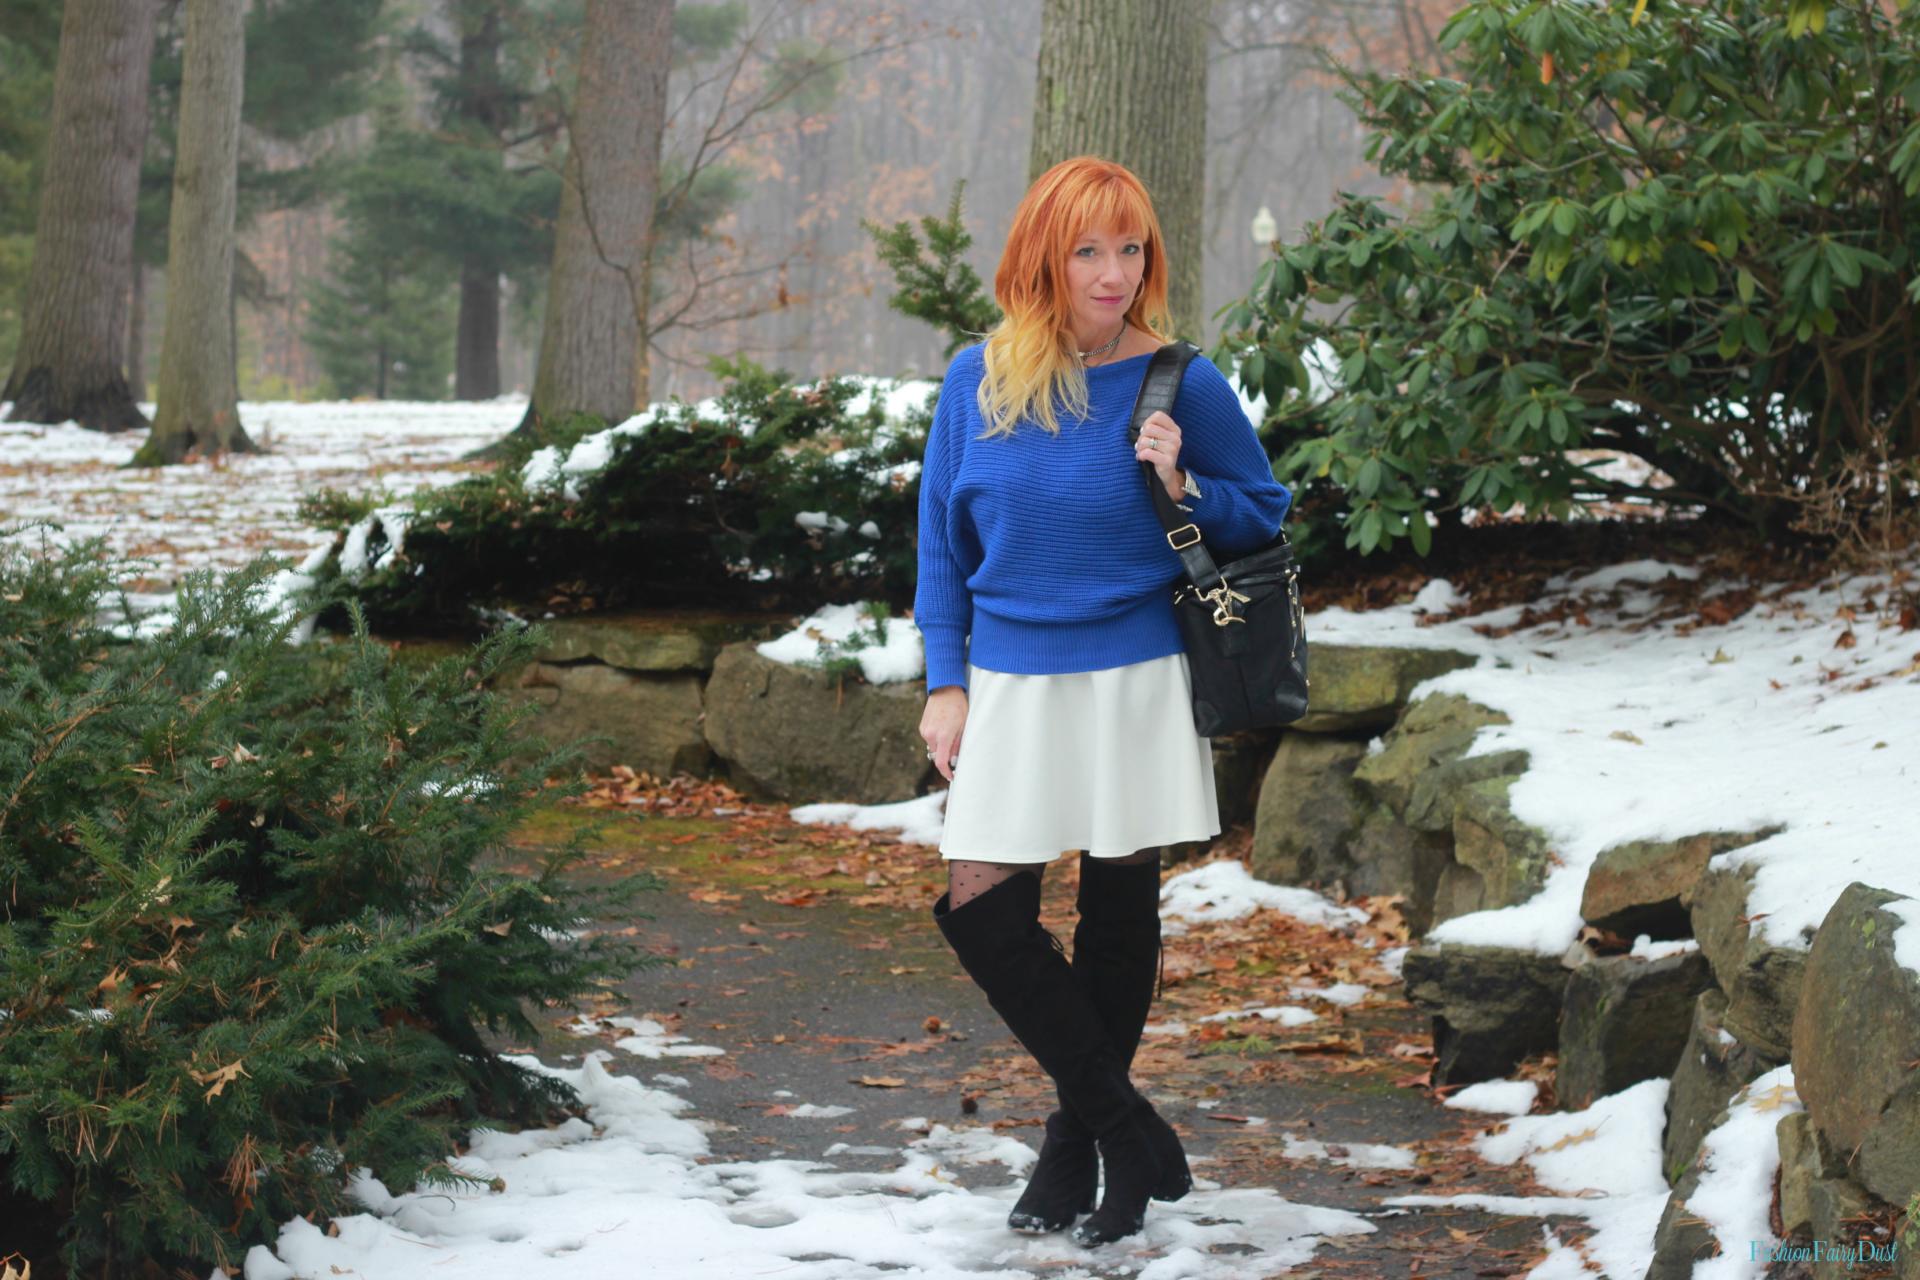 Mod camera bag, blue sweater and white skater skirt.